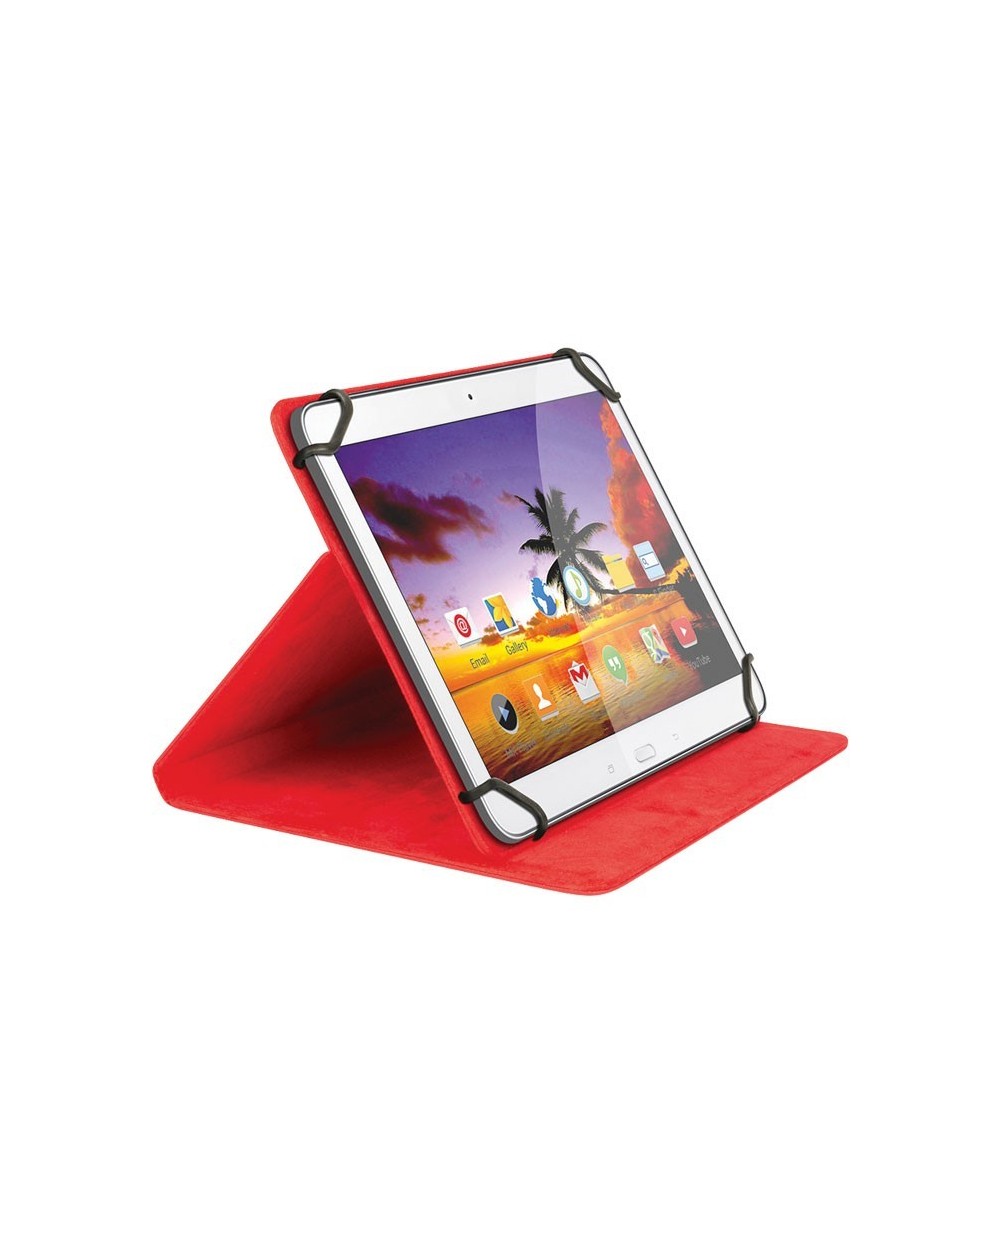 Universal Θήκη για Tablet 8" και Βάση Στήριξης, 2 σε 1 SWEEX SA 322V2 RED